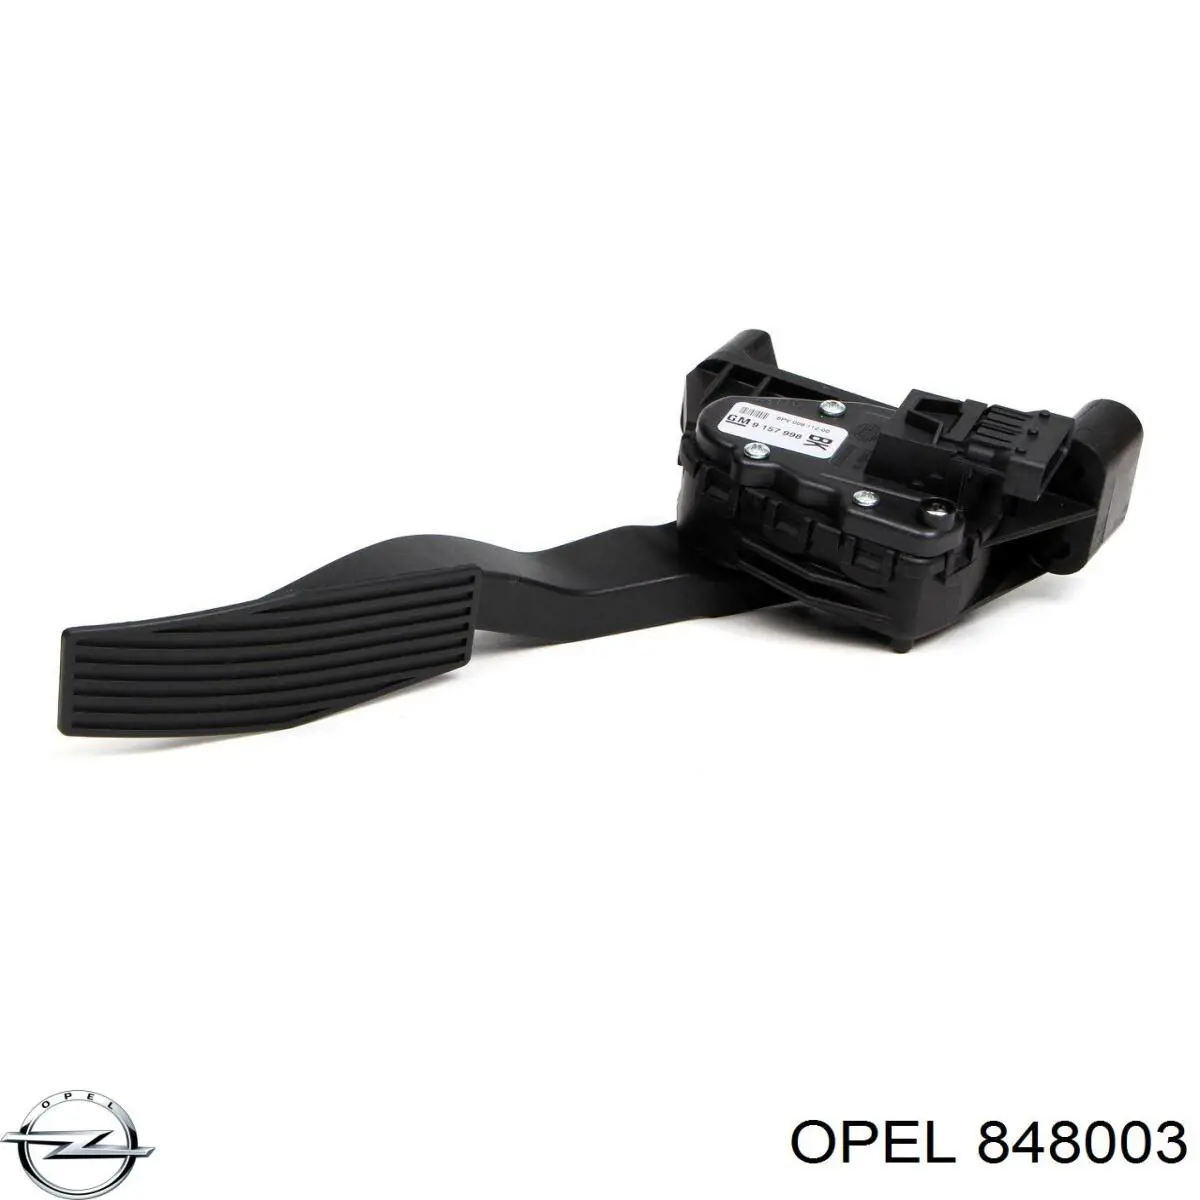 848003 Opel pedal de acelerador